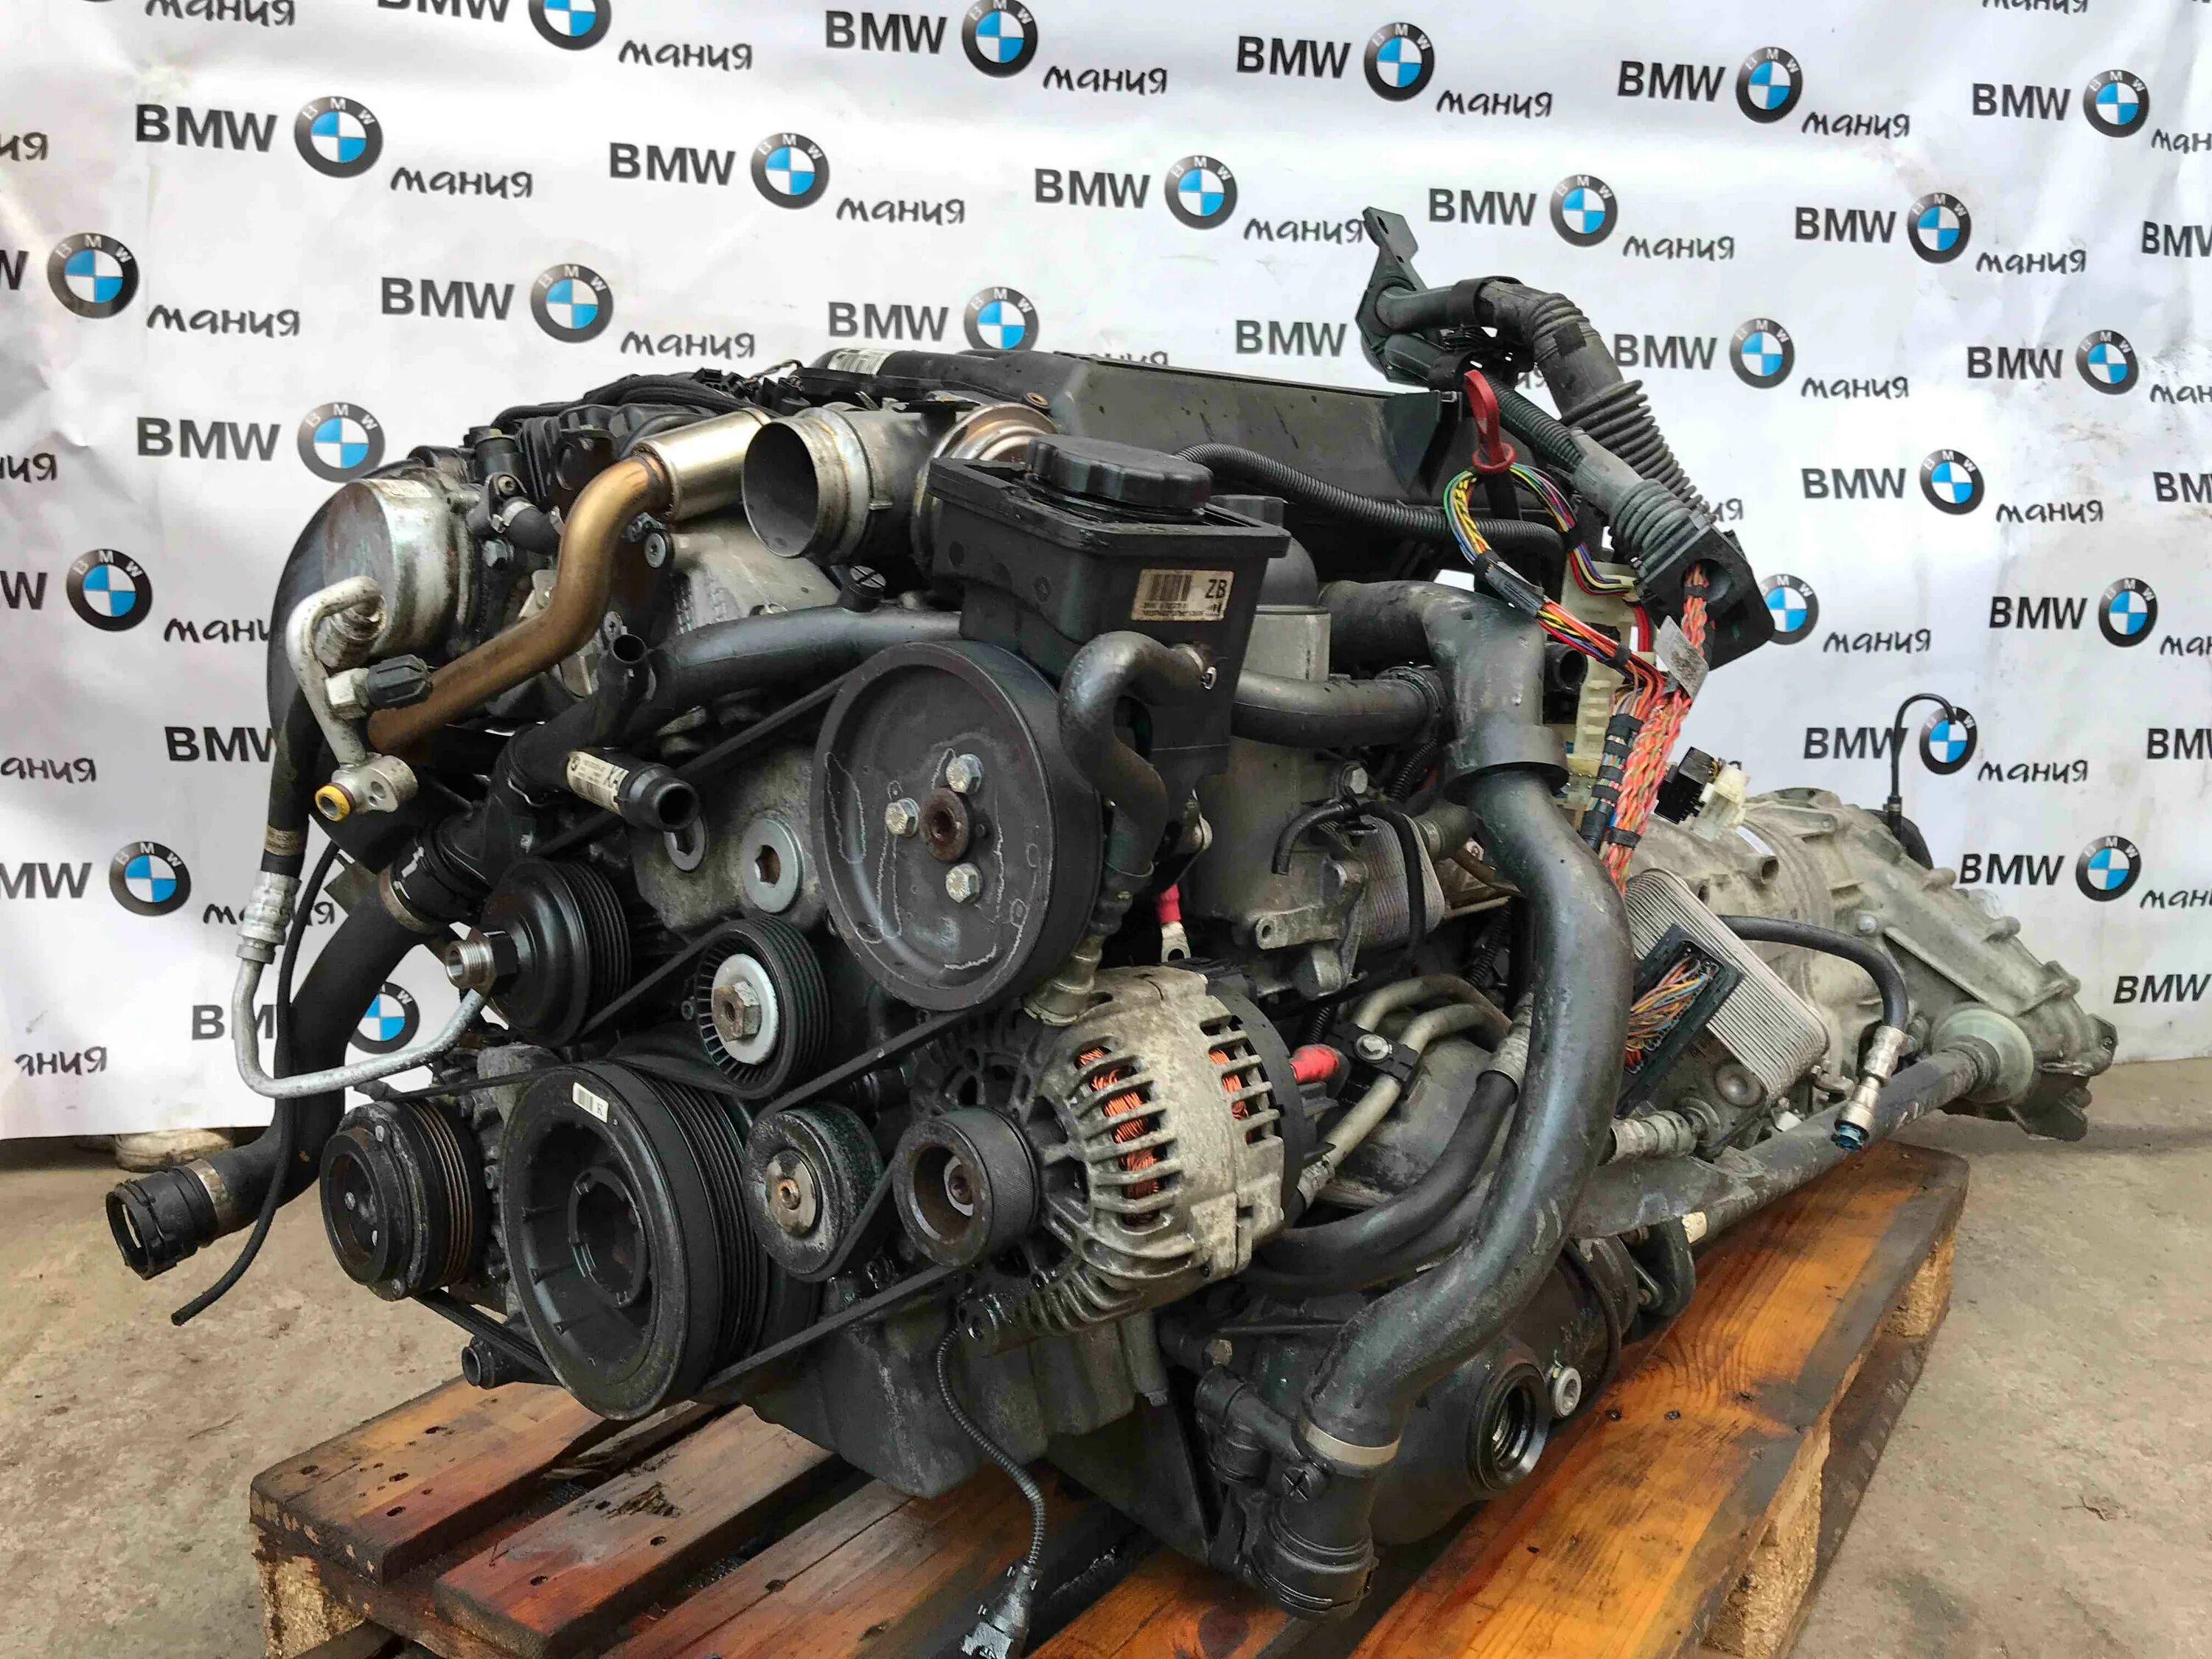 Дизель е 3. Двигатель БМВ м57 3.0 дизель. Мотор BMW x5 e70 3.0 дизель. Мотор БМВ х5 е53 3.0. Мотор дизель BMW x5 e53.